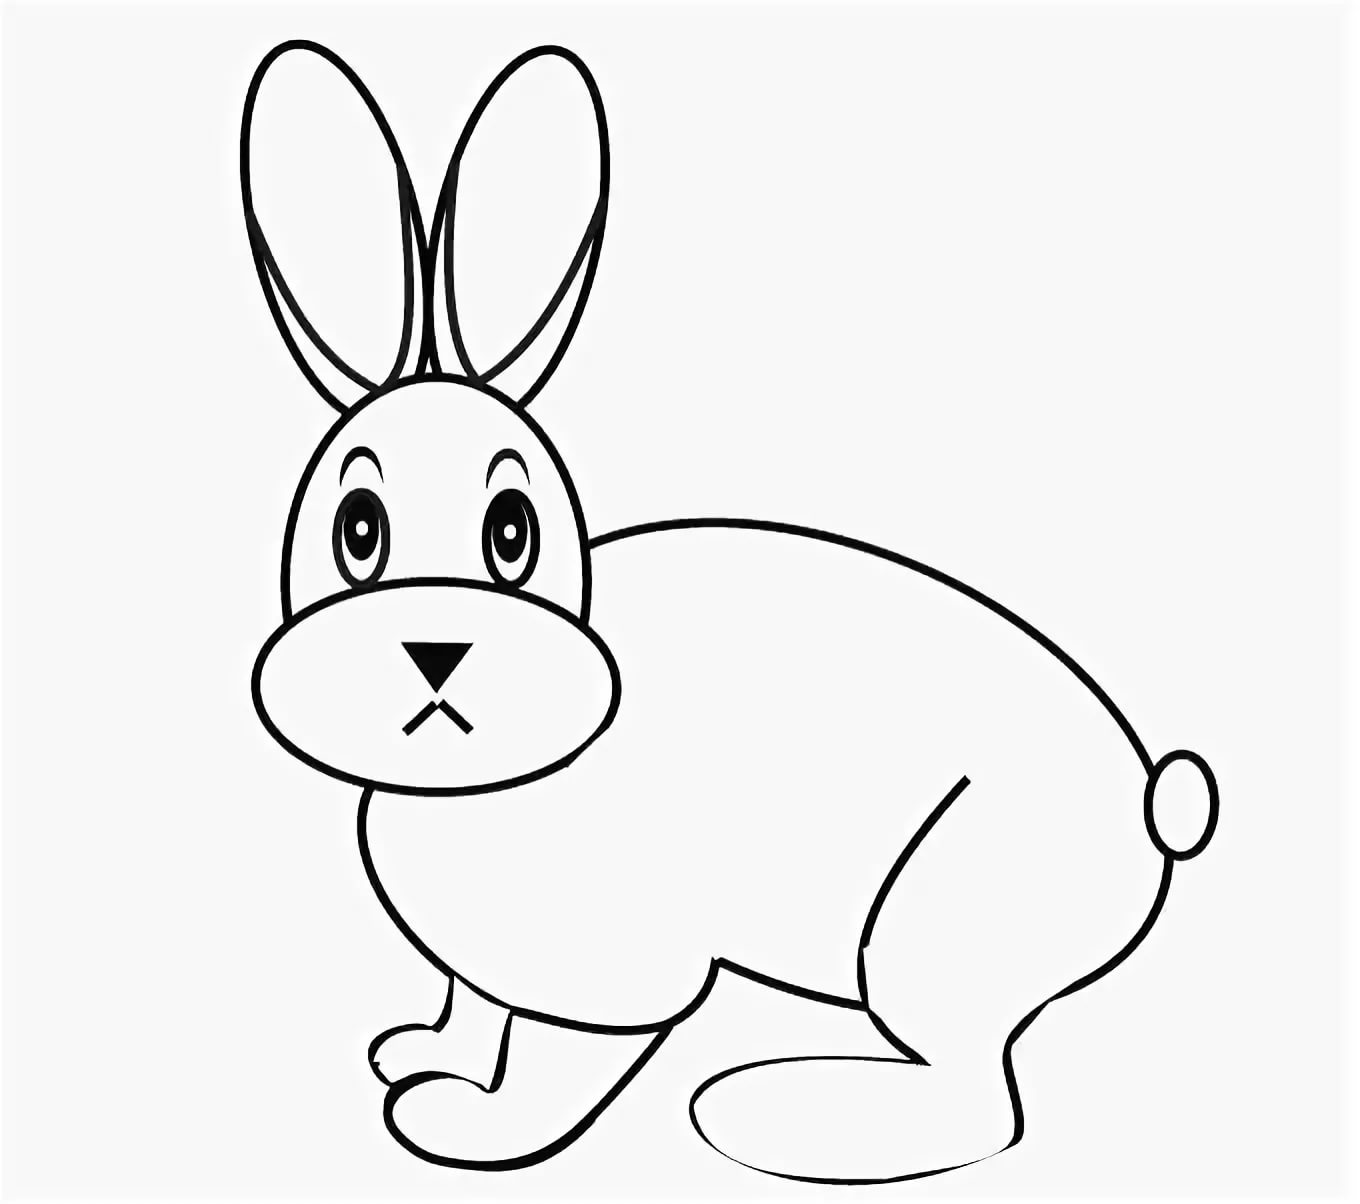 Схематичный рисунок зайца